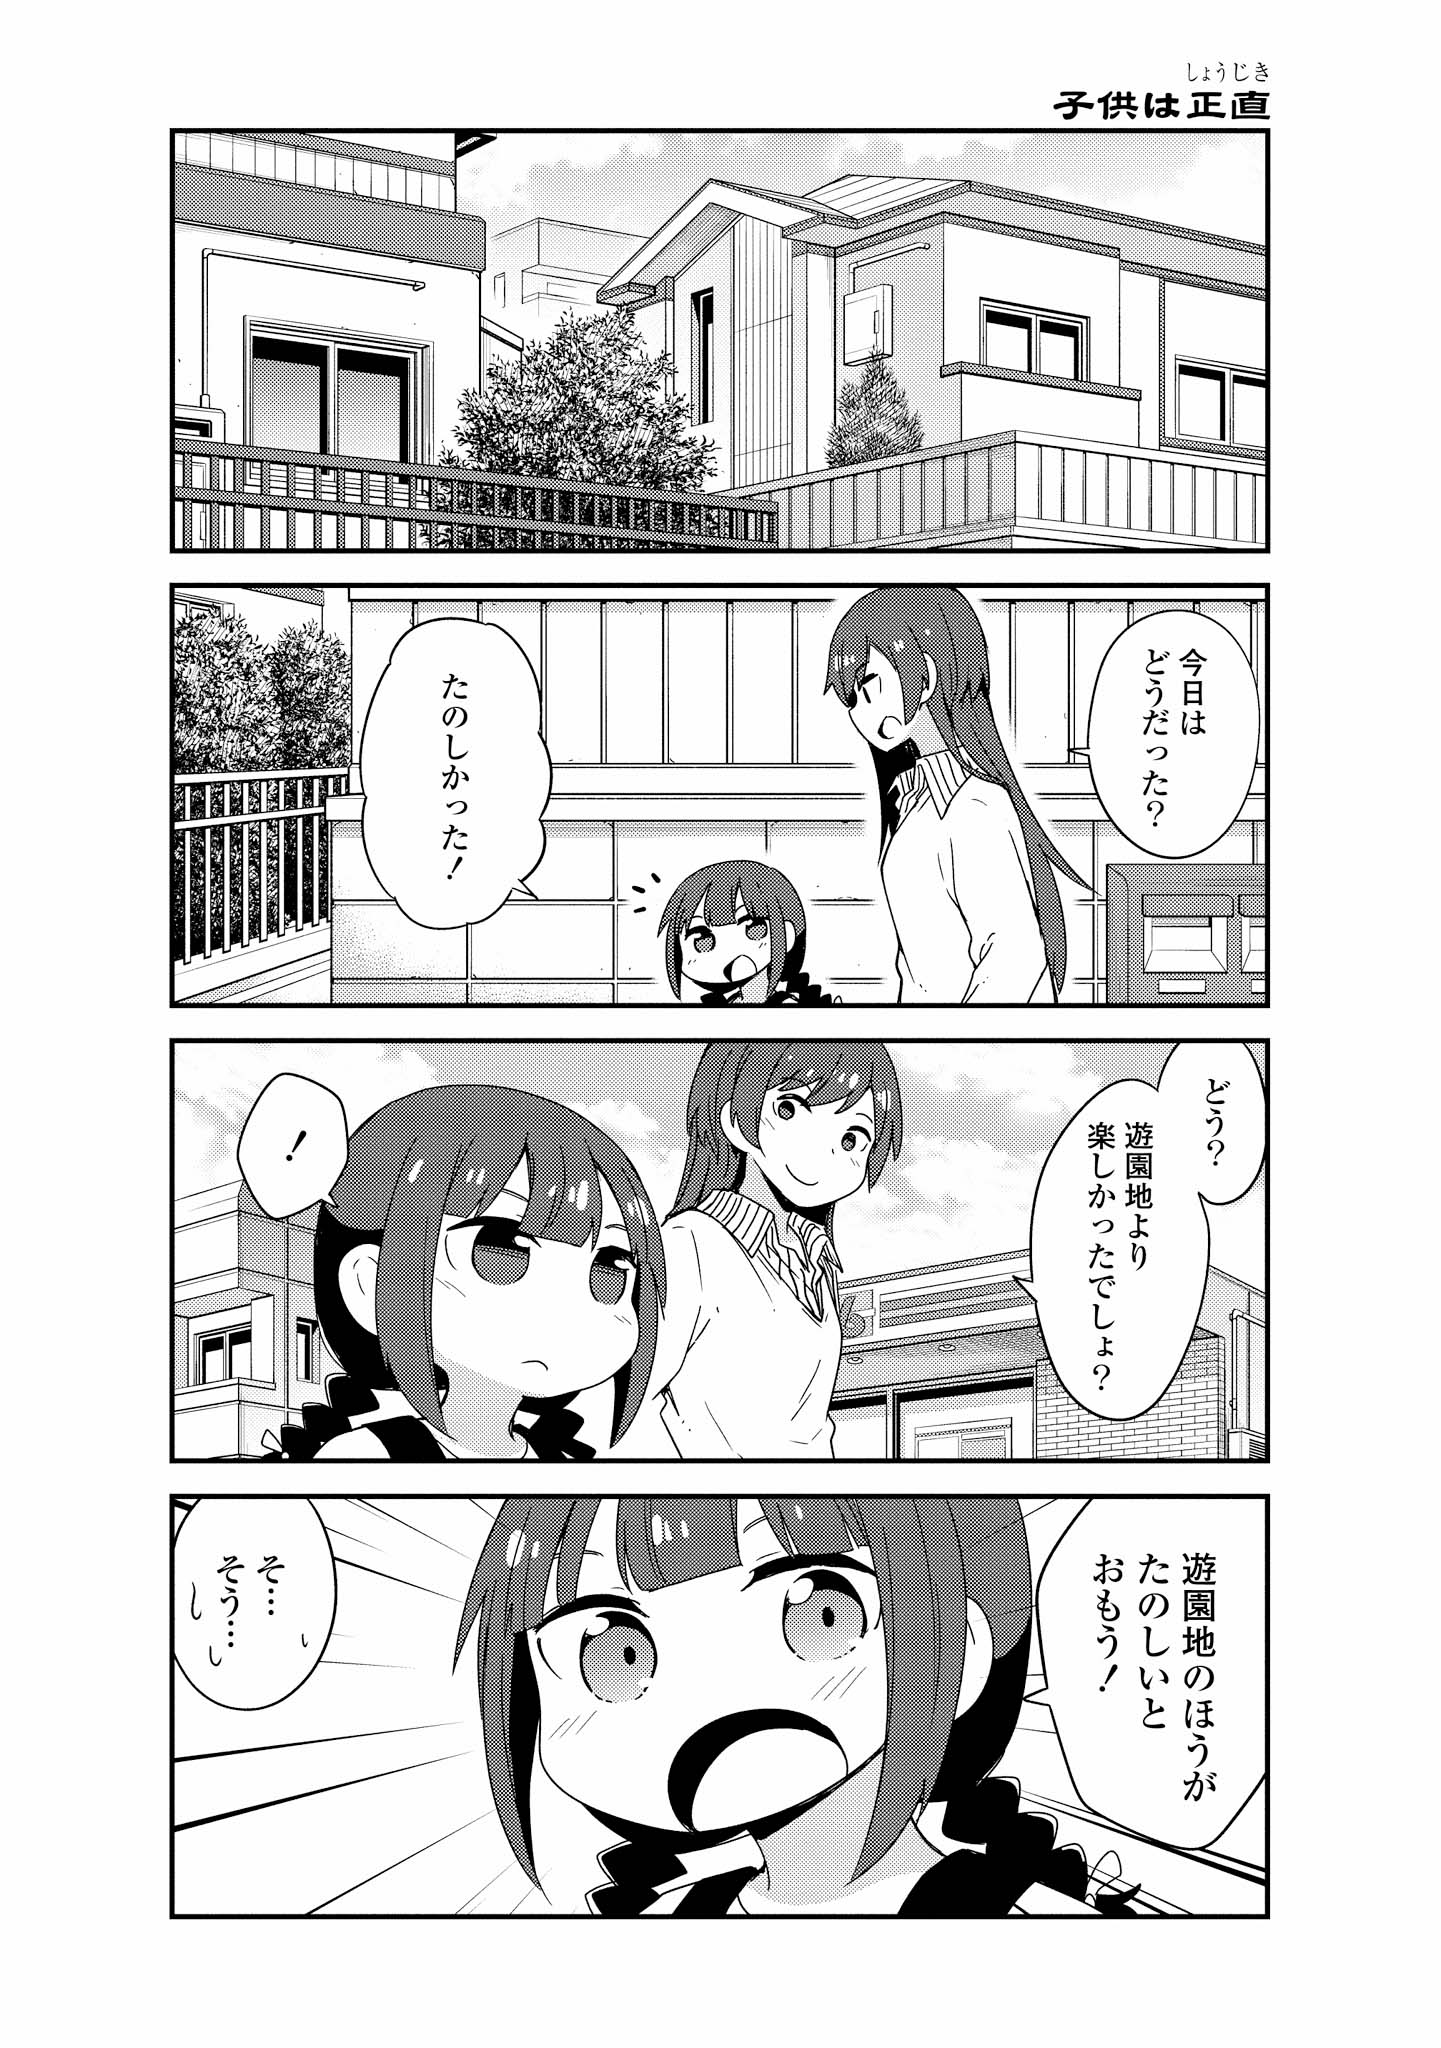 Watashi ni Tenshi ga Maiorita! - Chapter 39 - Page 18